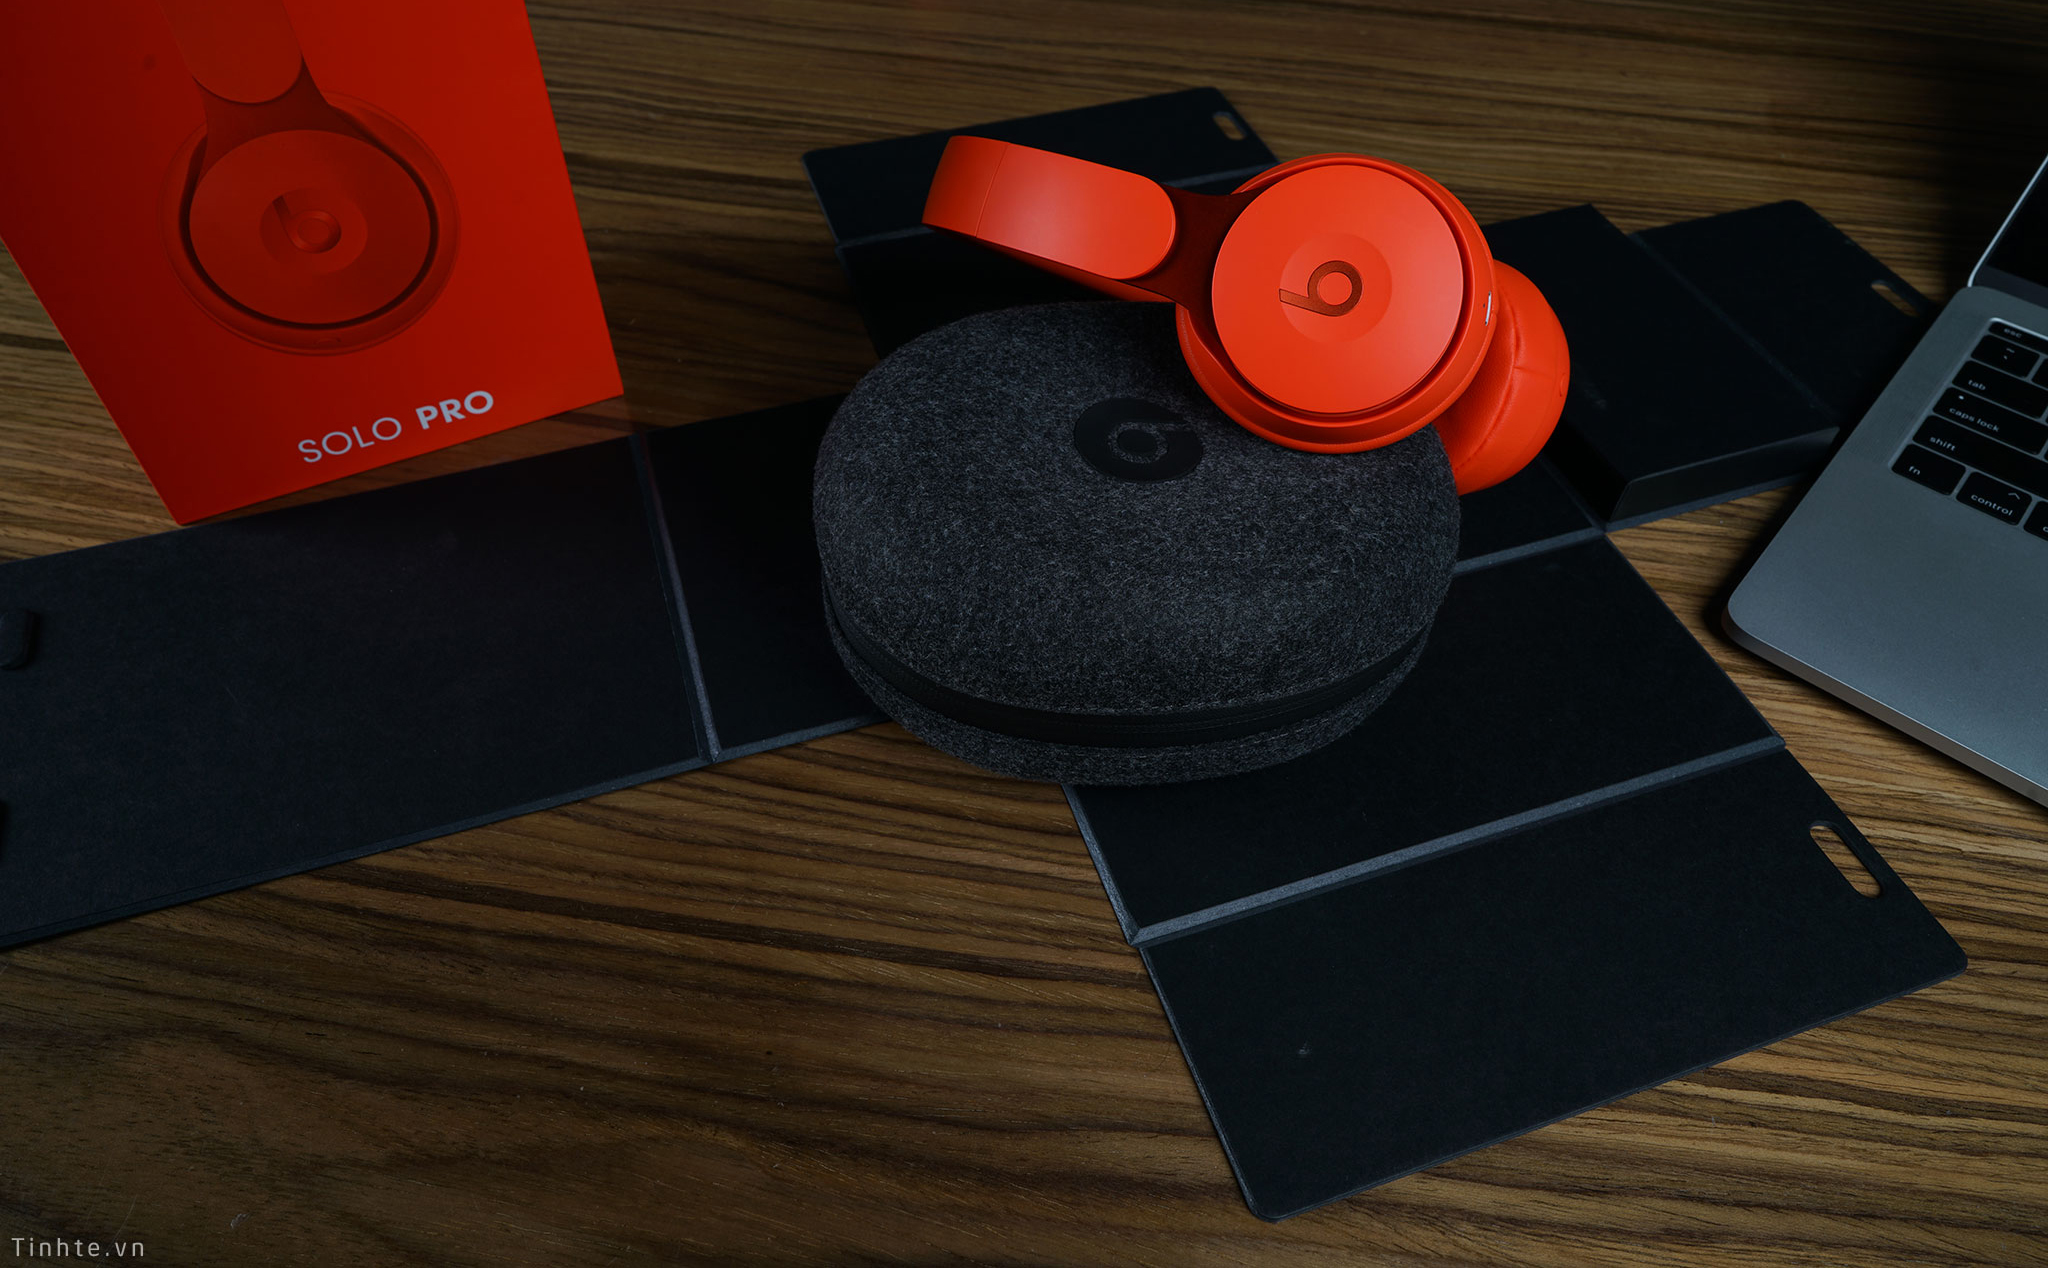 Unboxing Beats Solo Pro: màu đẹp, kết cấu chắc chắn, microphone ngon, chống ồn tốt, $300